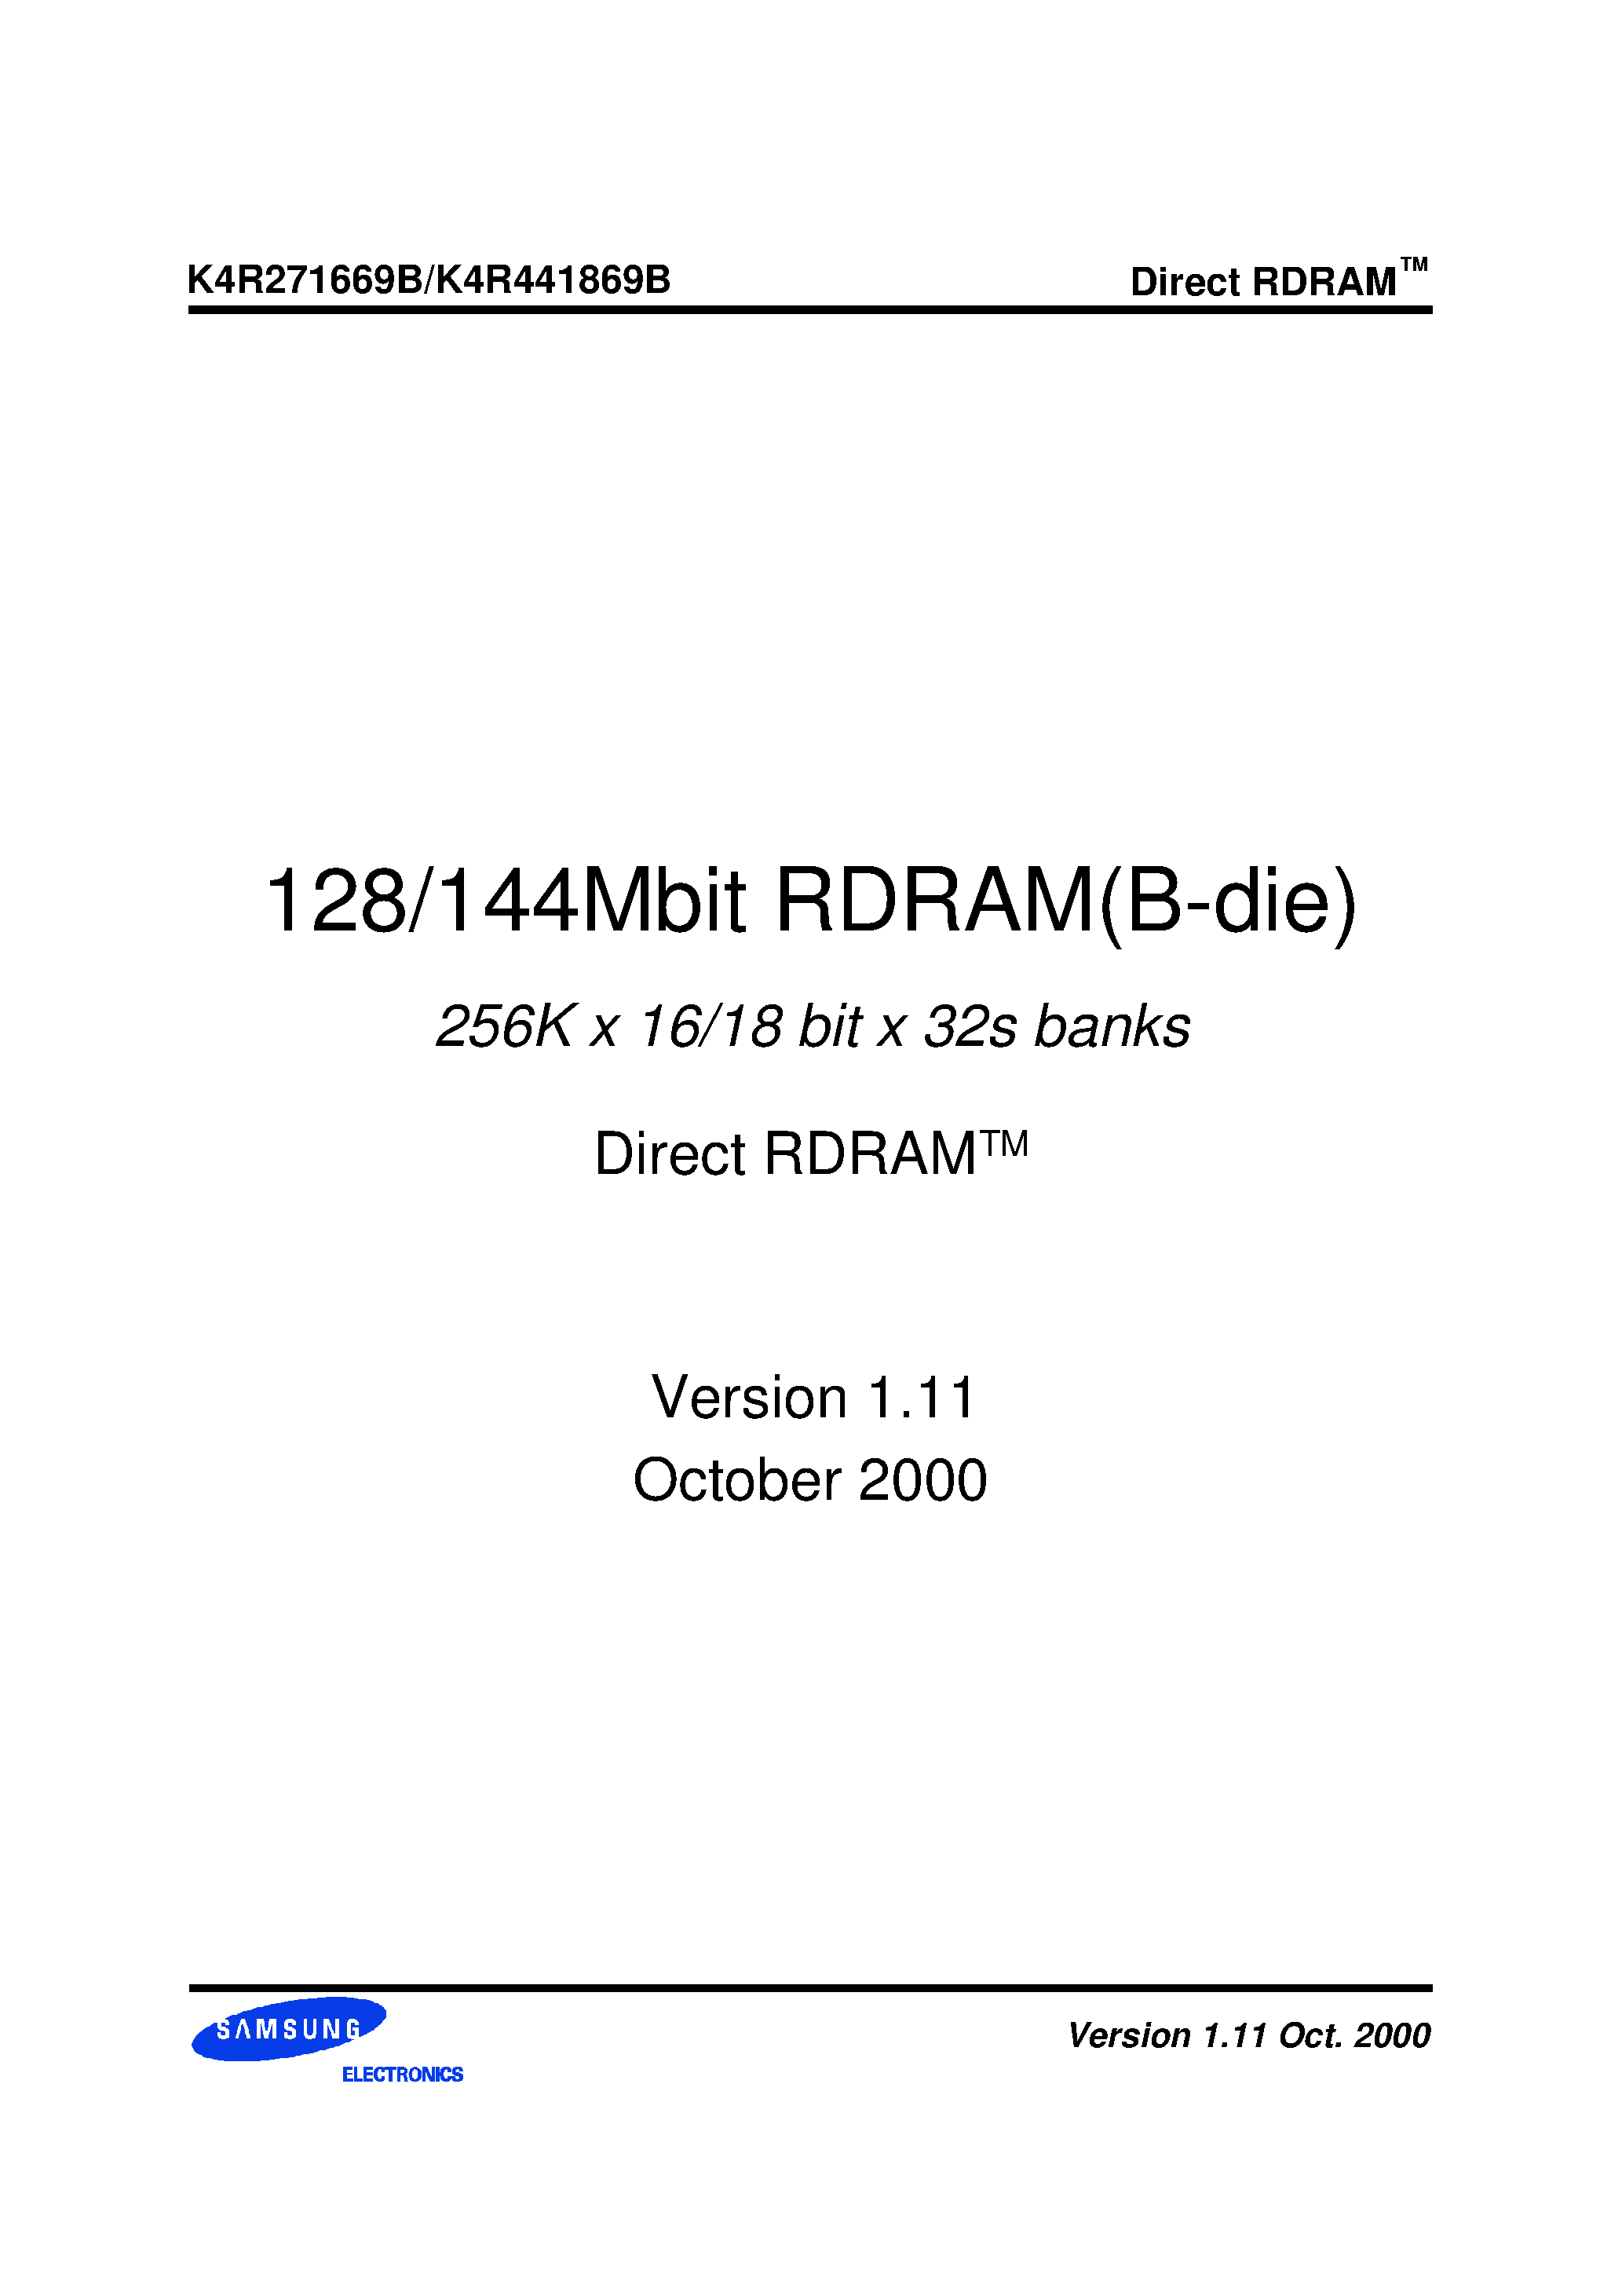 Даташит K4R441869B-N(M)CG6 - 256K x 16/18 bit x 32s banks Direct RDRAMTM страница 1